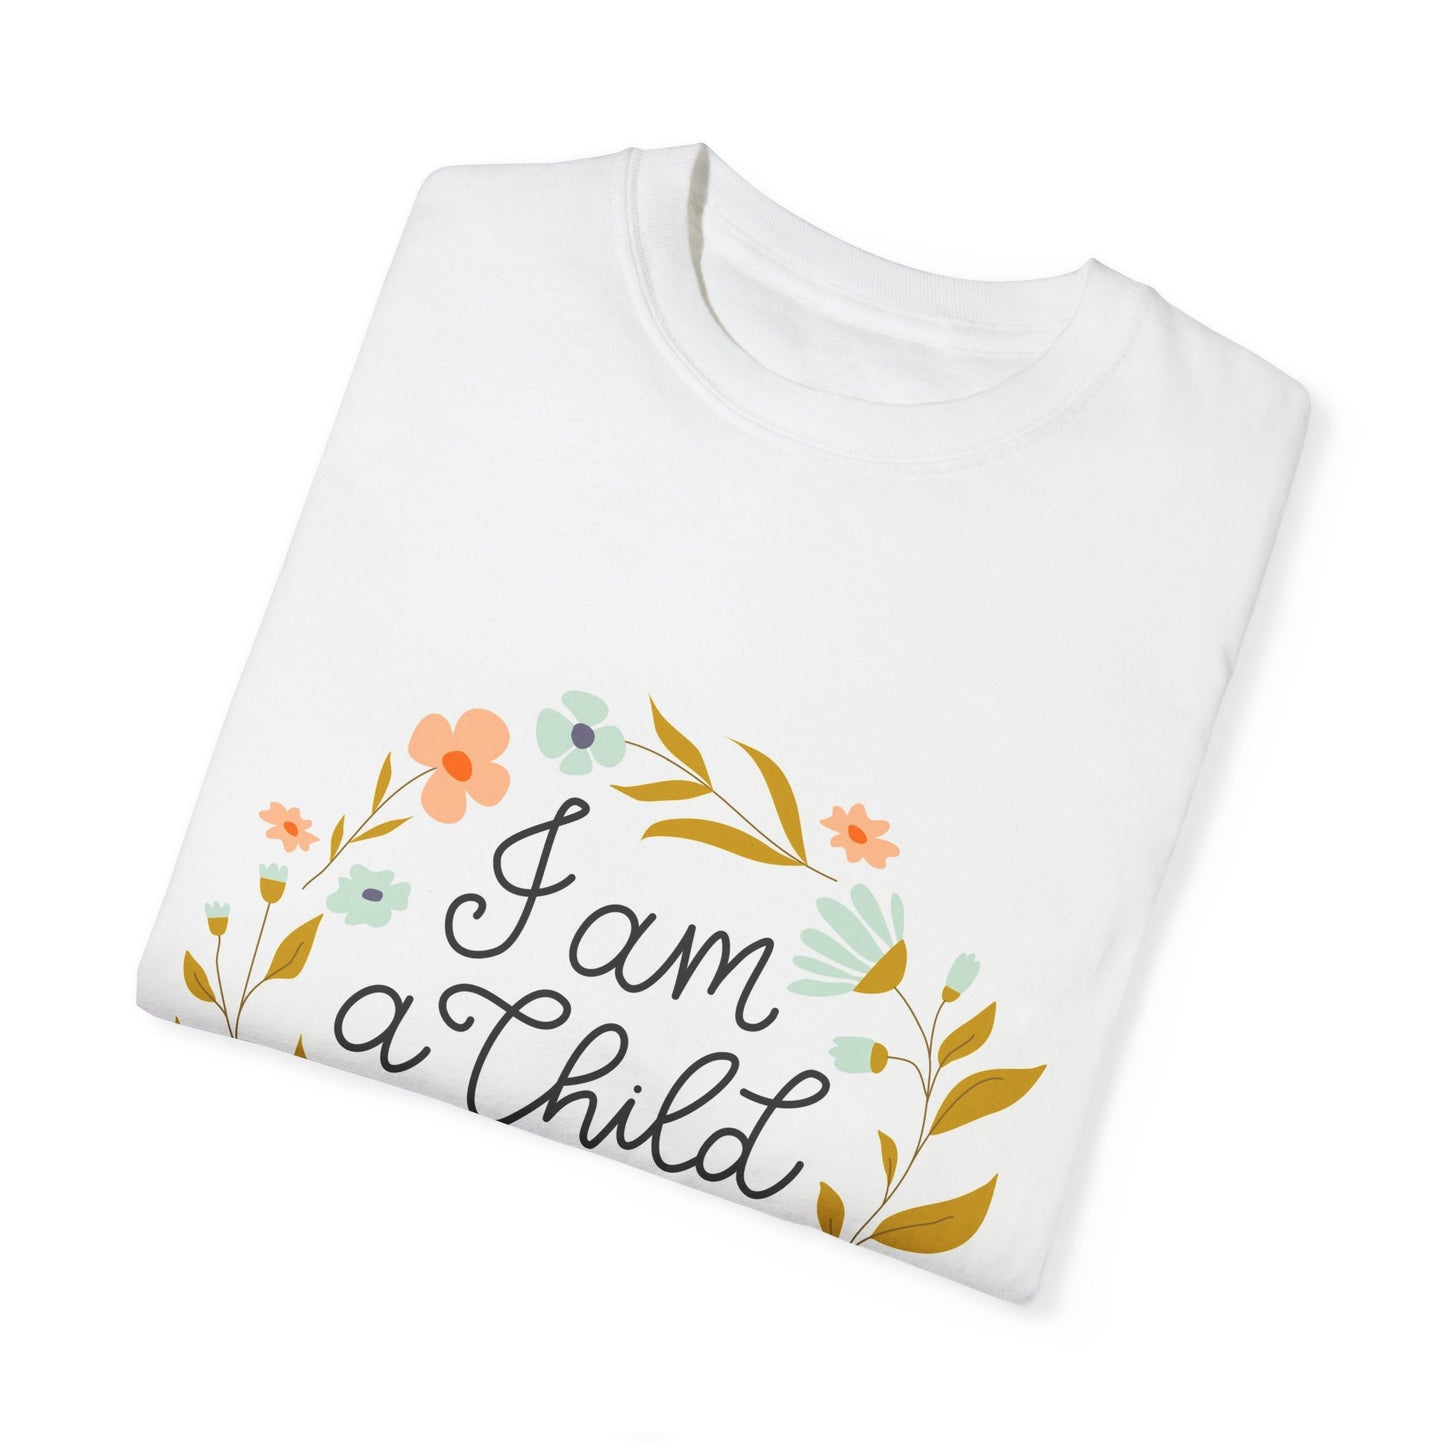 " I Am A Child Of God" Unisex T-Shirt